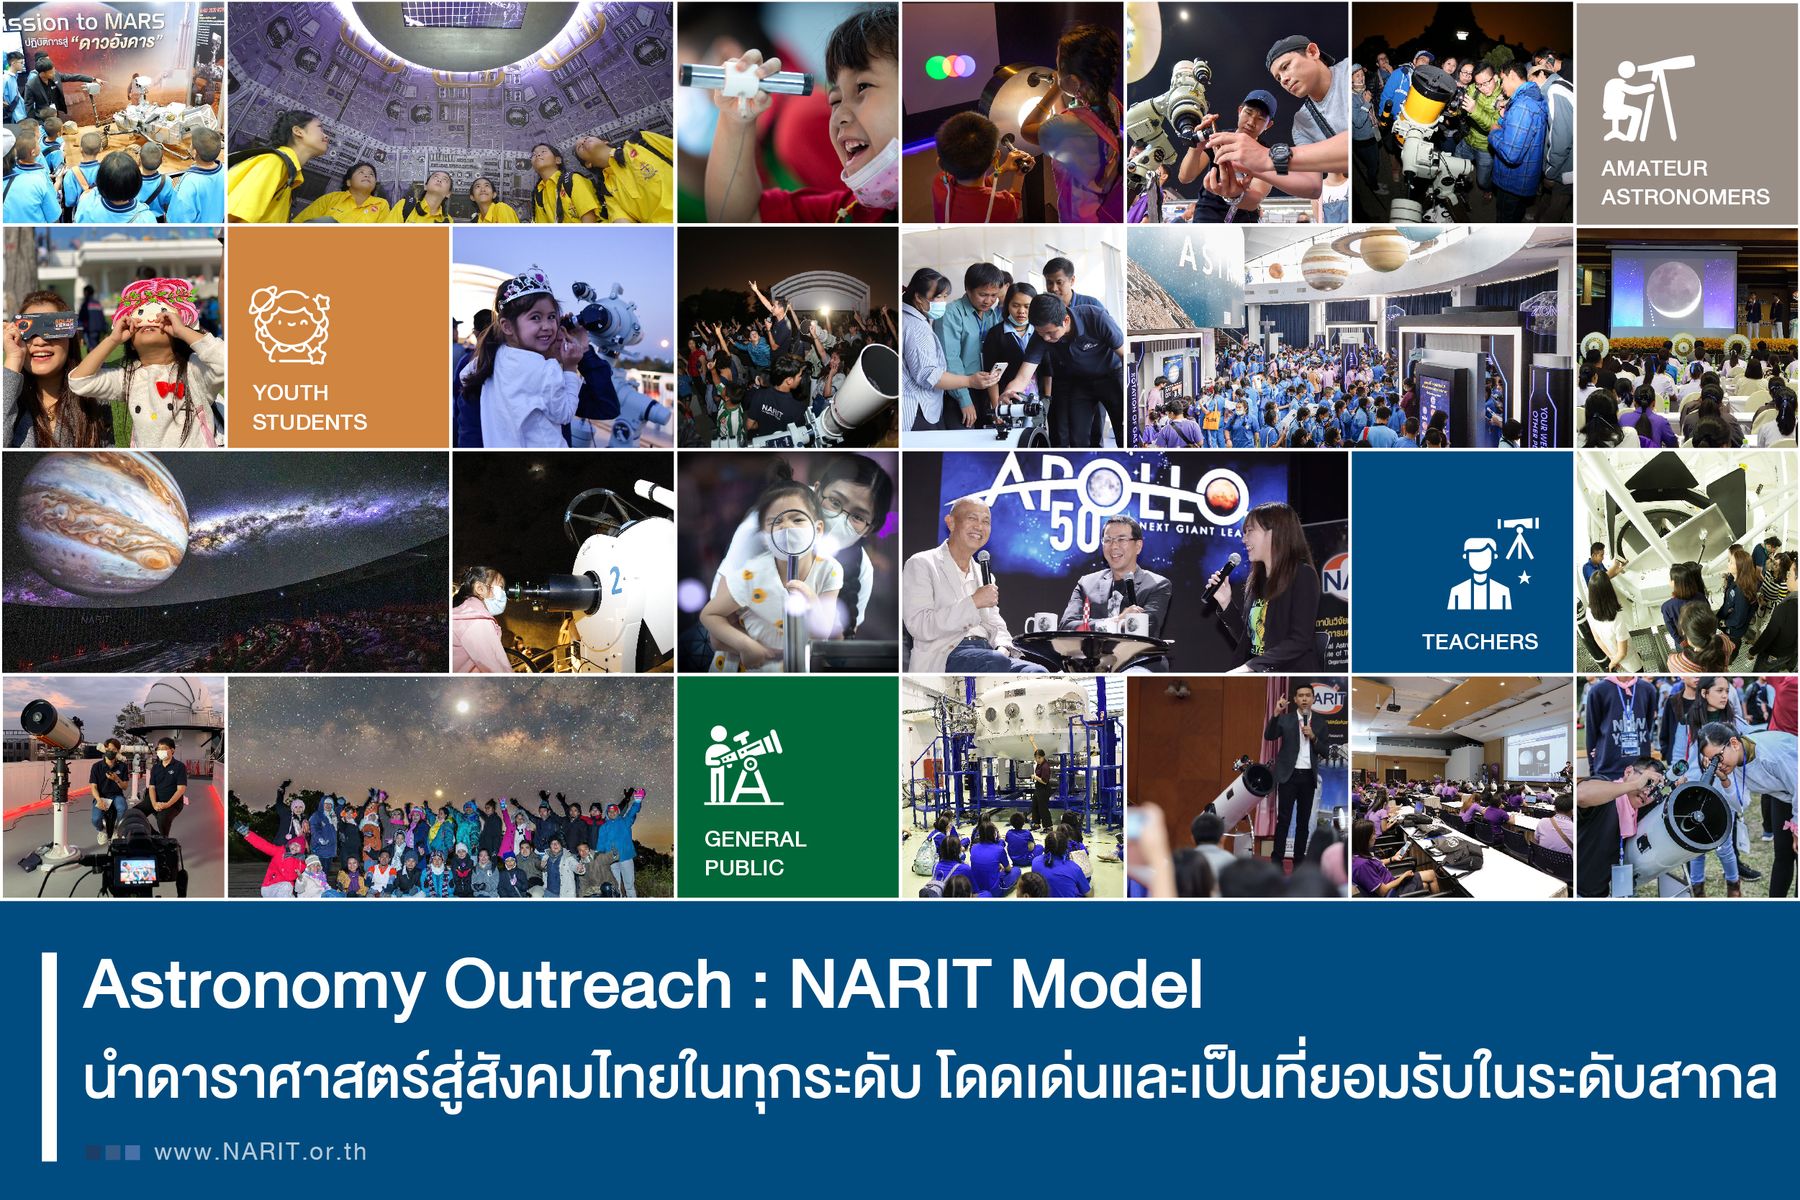 Ep 34. Astronomy Outreach : NARIT Model  นำดาราศาสตร์สู่สังคมไทยในทุกระดับ โดดเด่นและเป็นที่ยอมรับในระดับสากล (1/2)